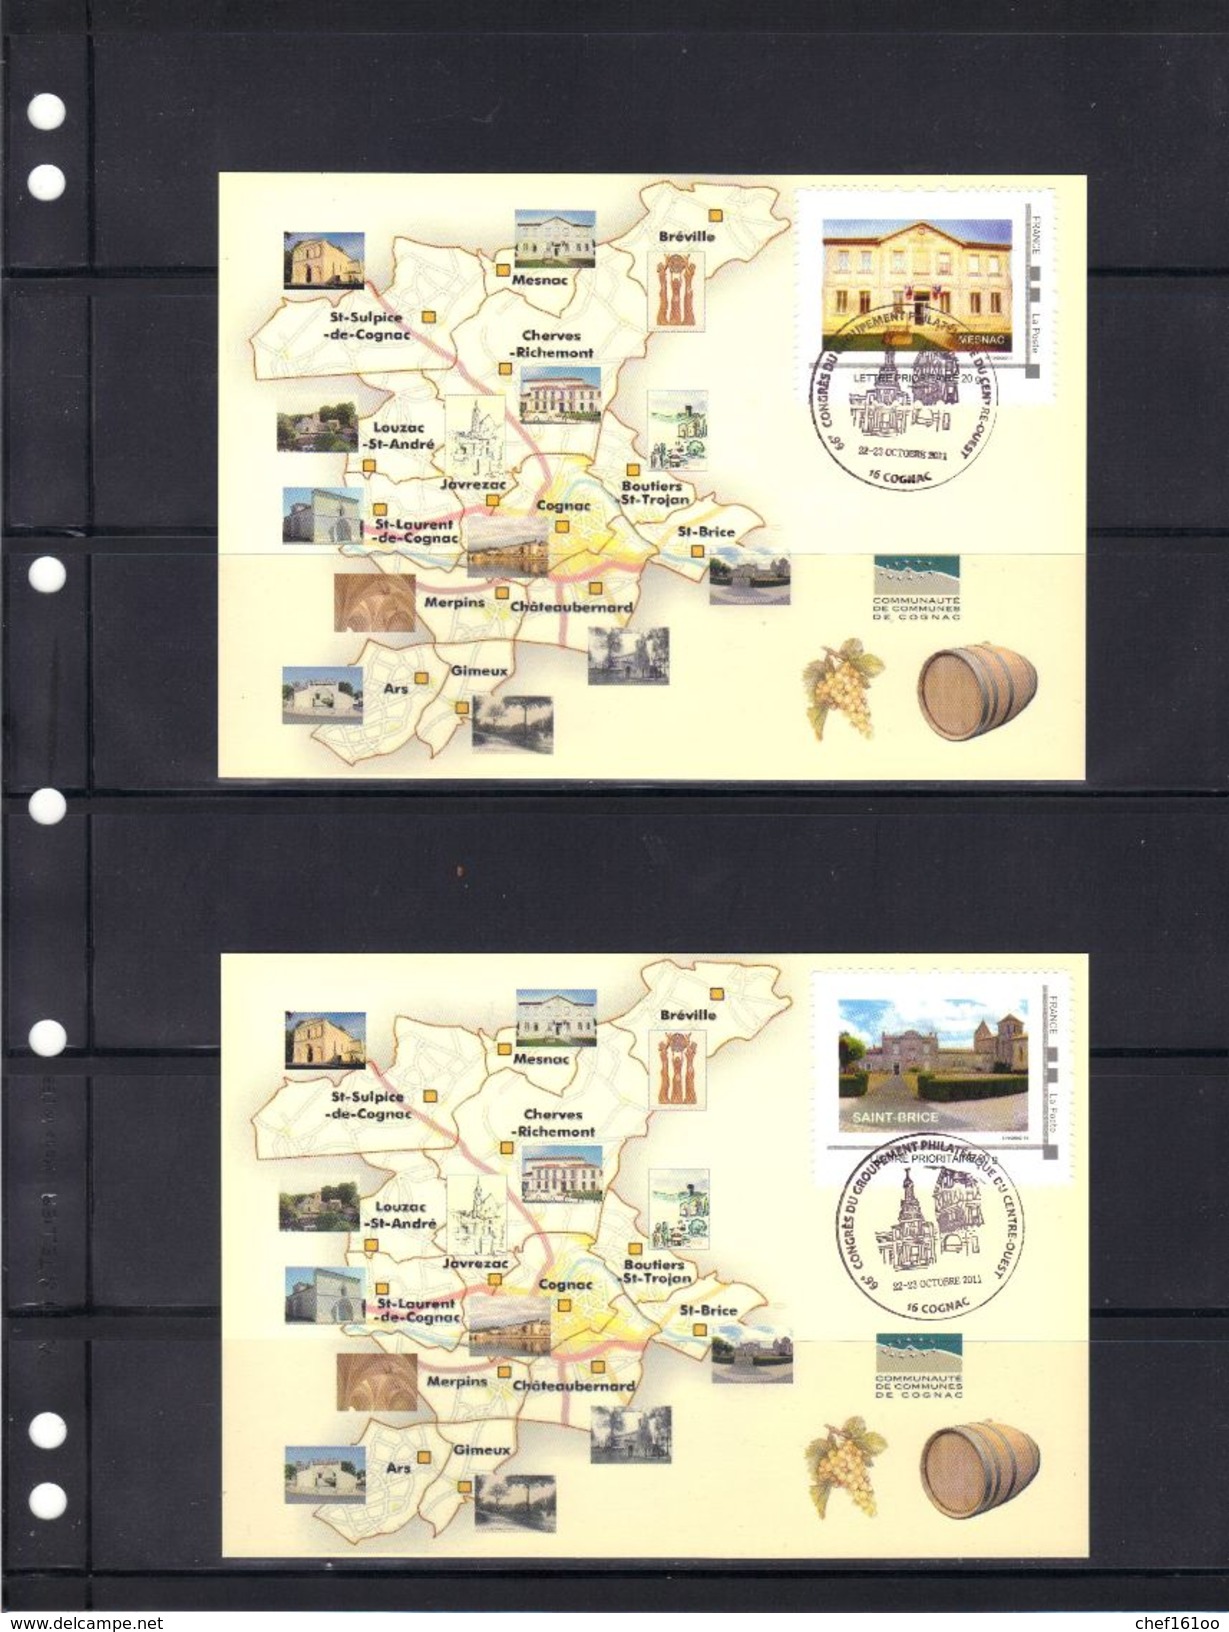 14 cartes avec timbres "collectors" différents de la communauté de communes de Cognac, 2011.